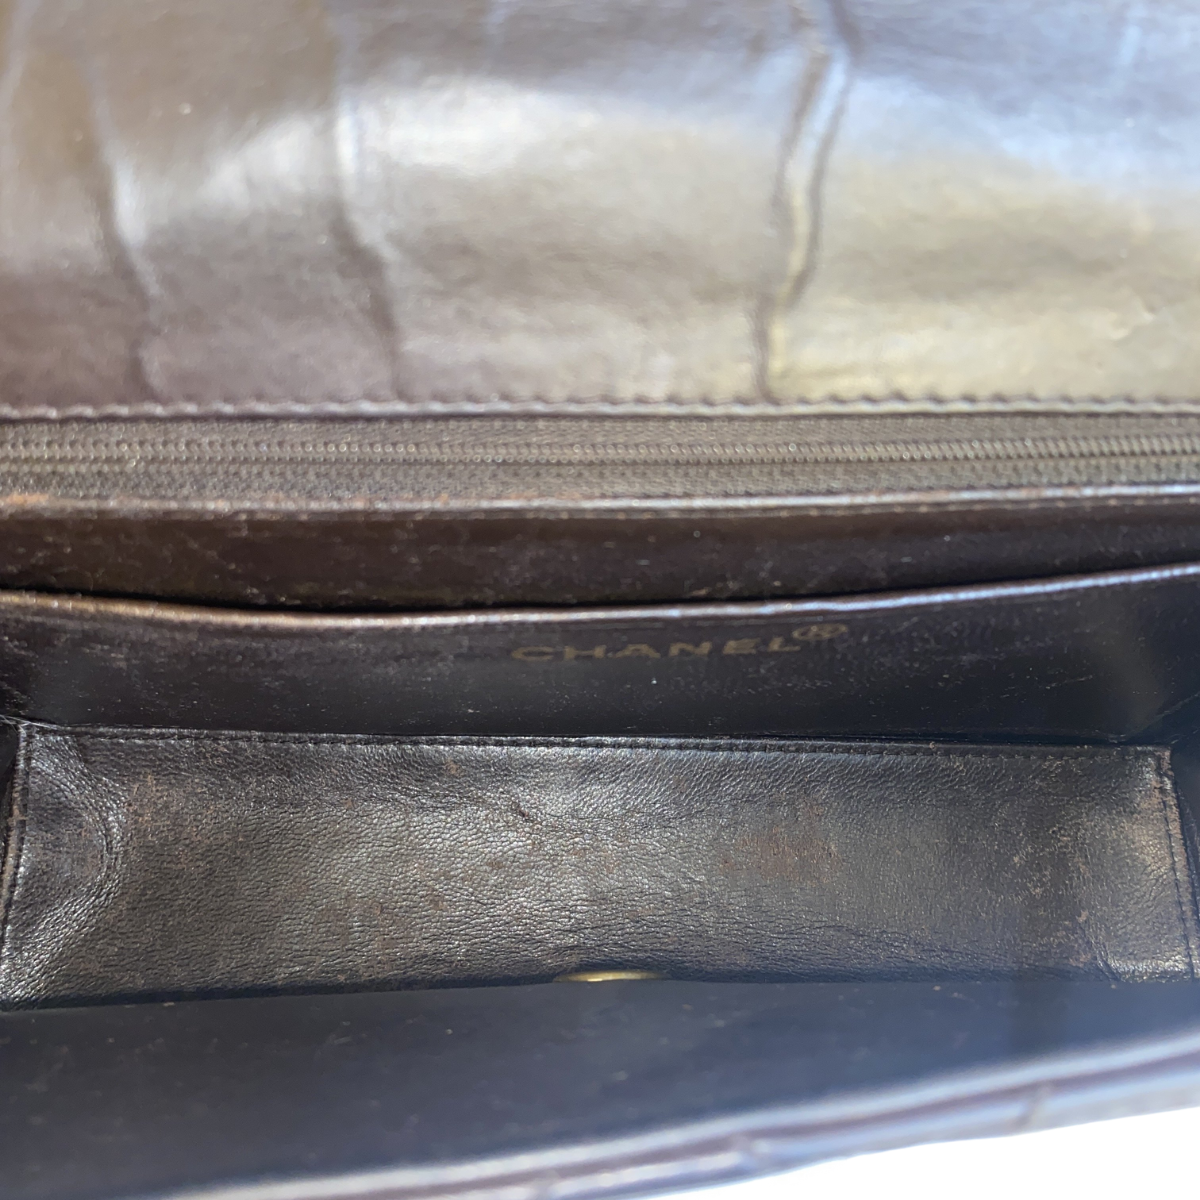 Chanel Flap Bag With Top Handle – ILUXURY LTD